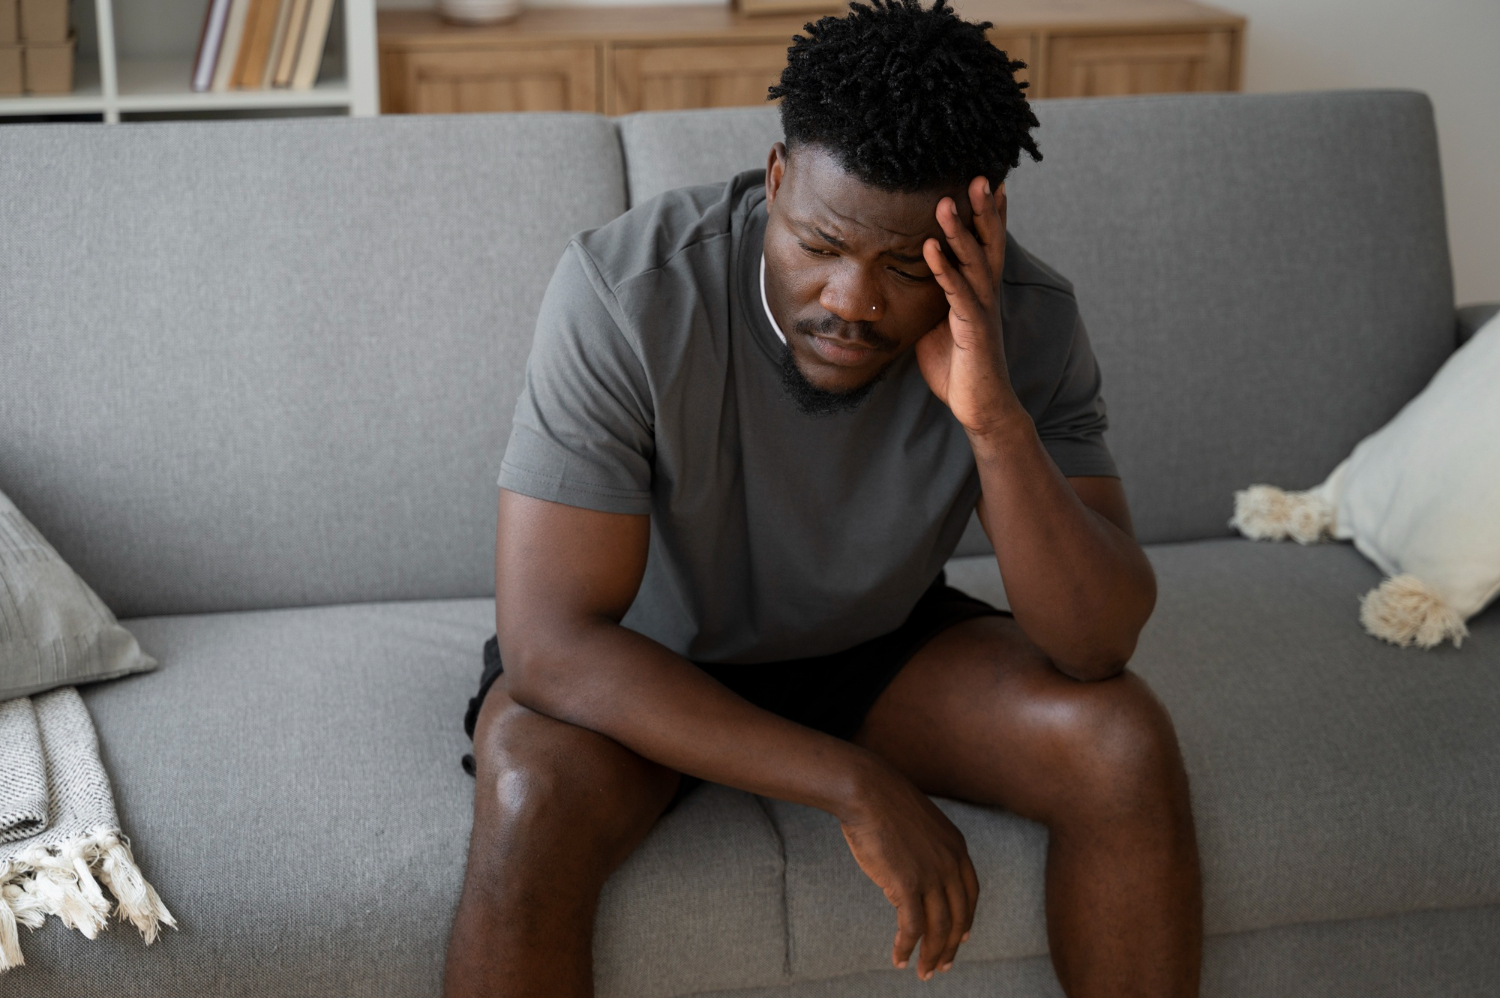 Você está visualizando atualmente 5 sinais incomuns da depressão em homens